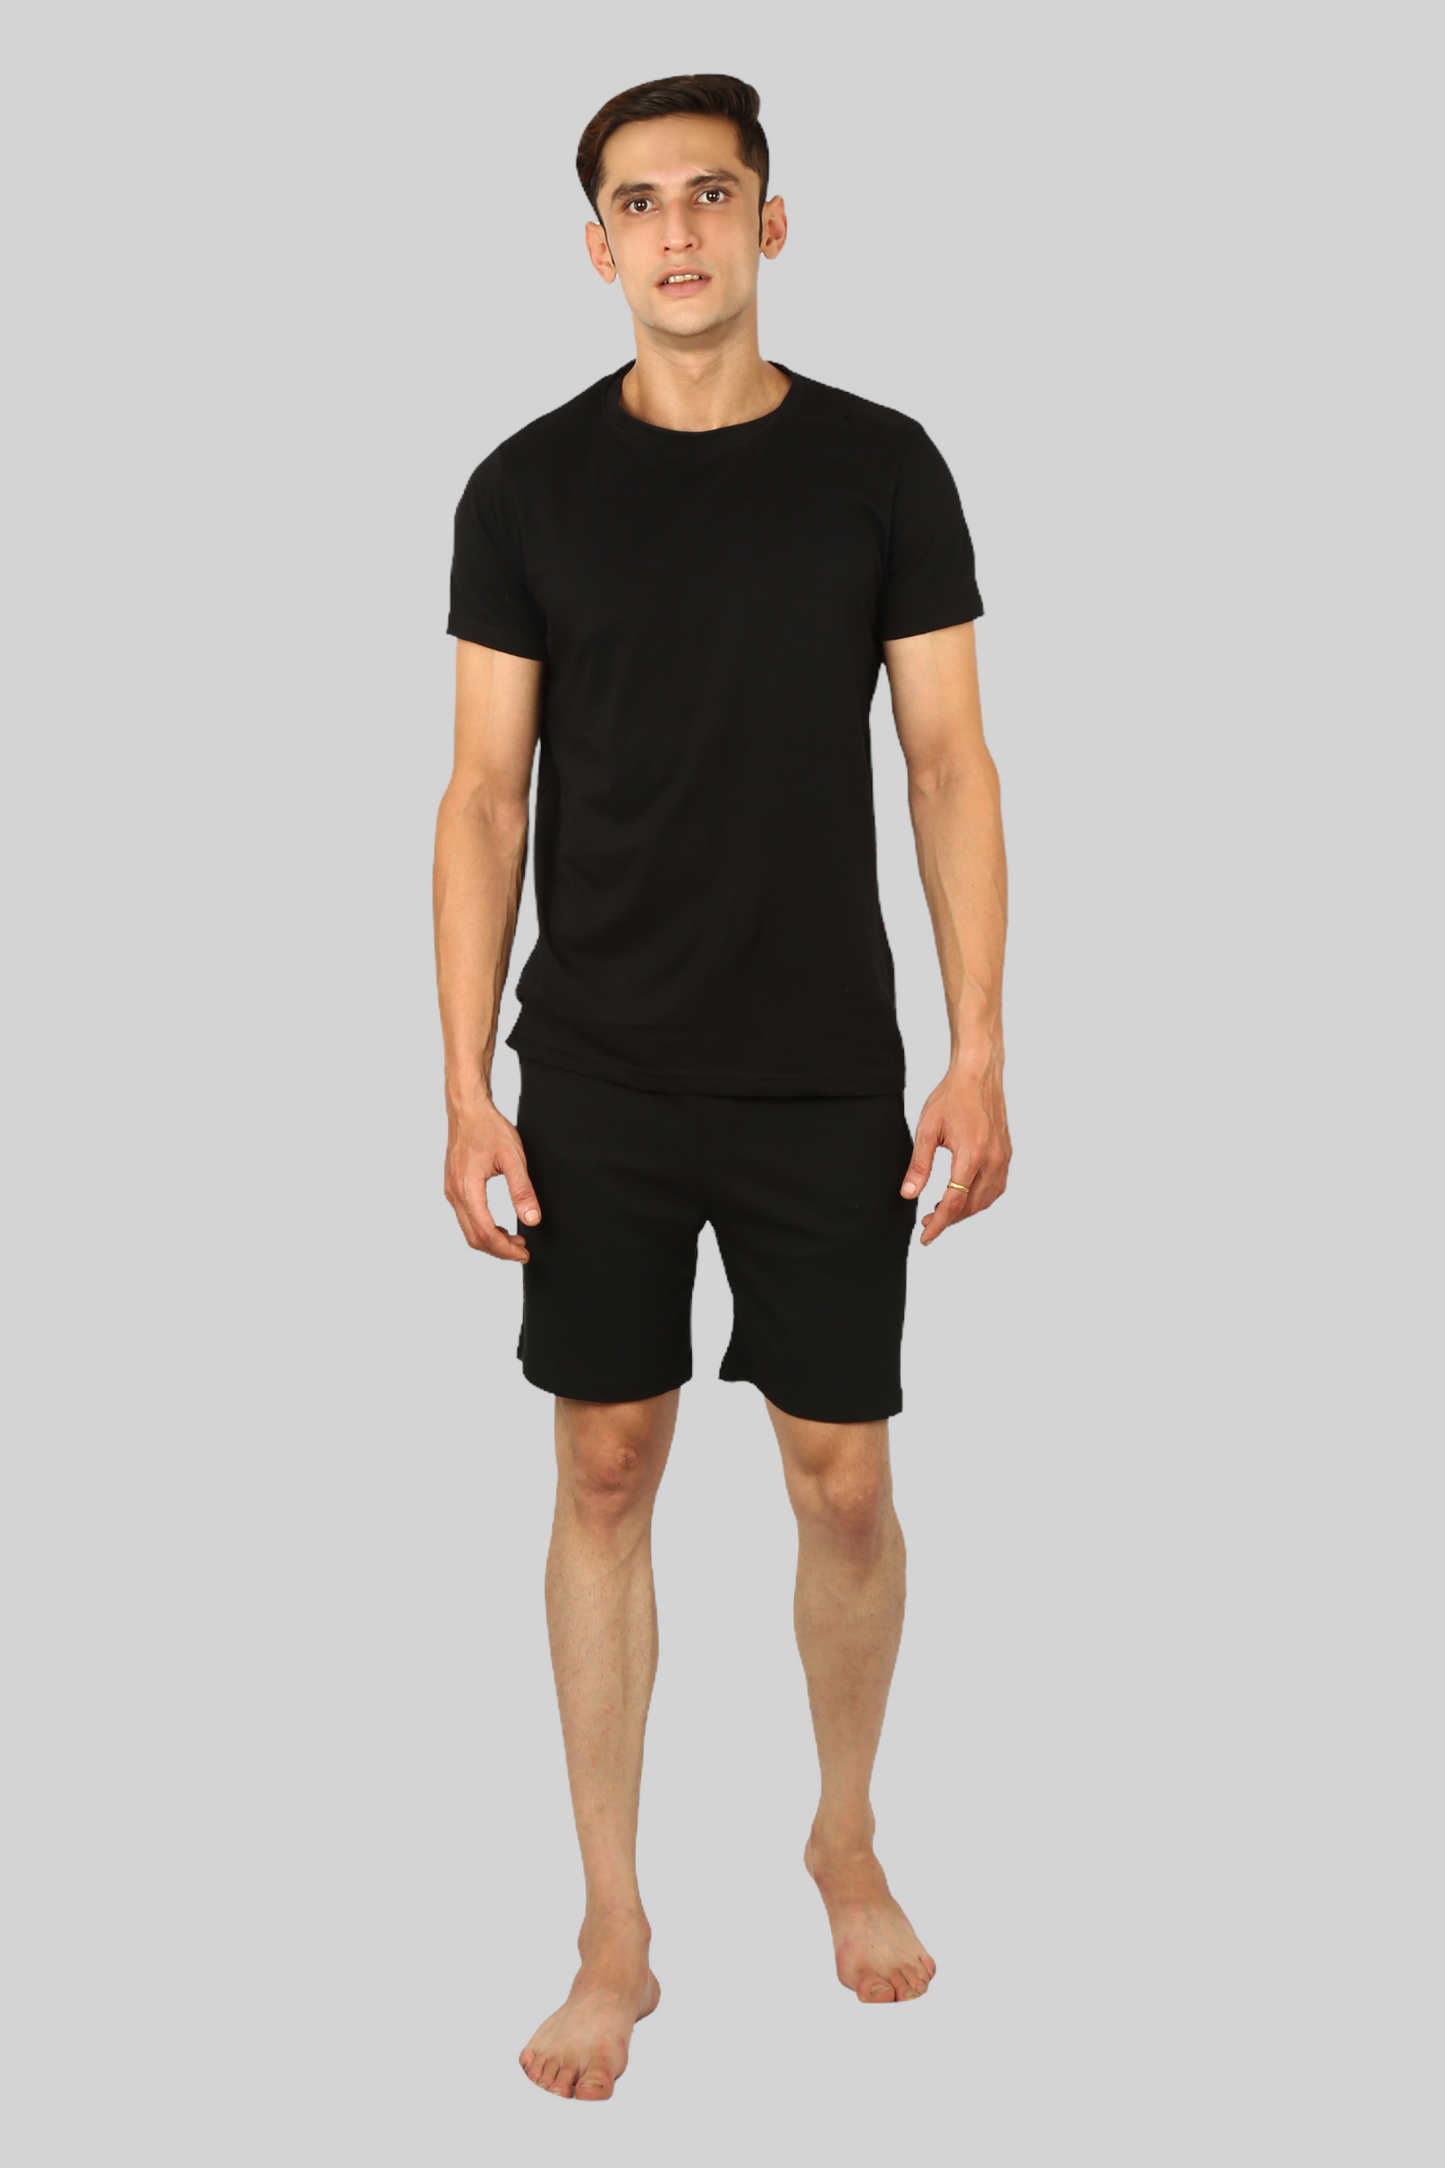 Black casual premium popcorn shorts for men